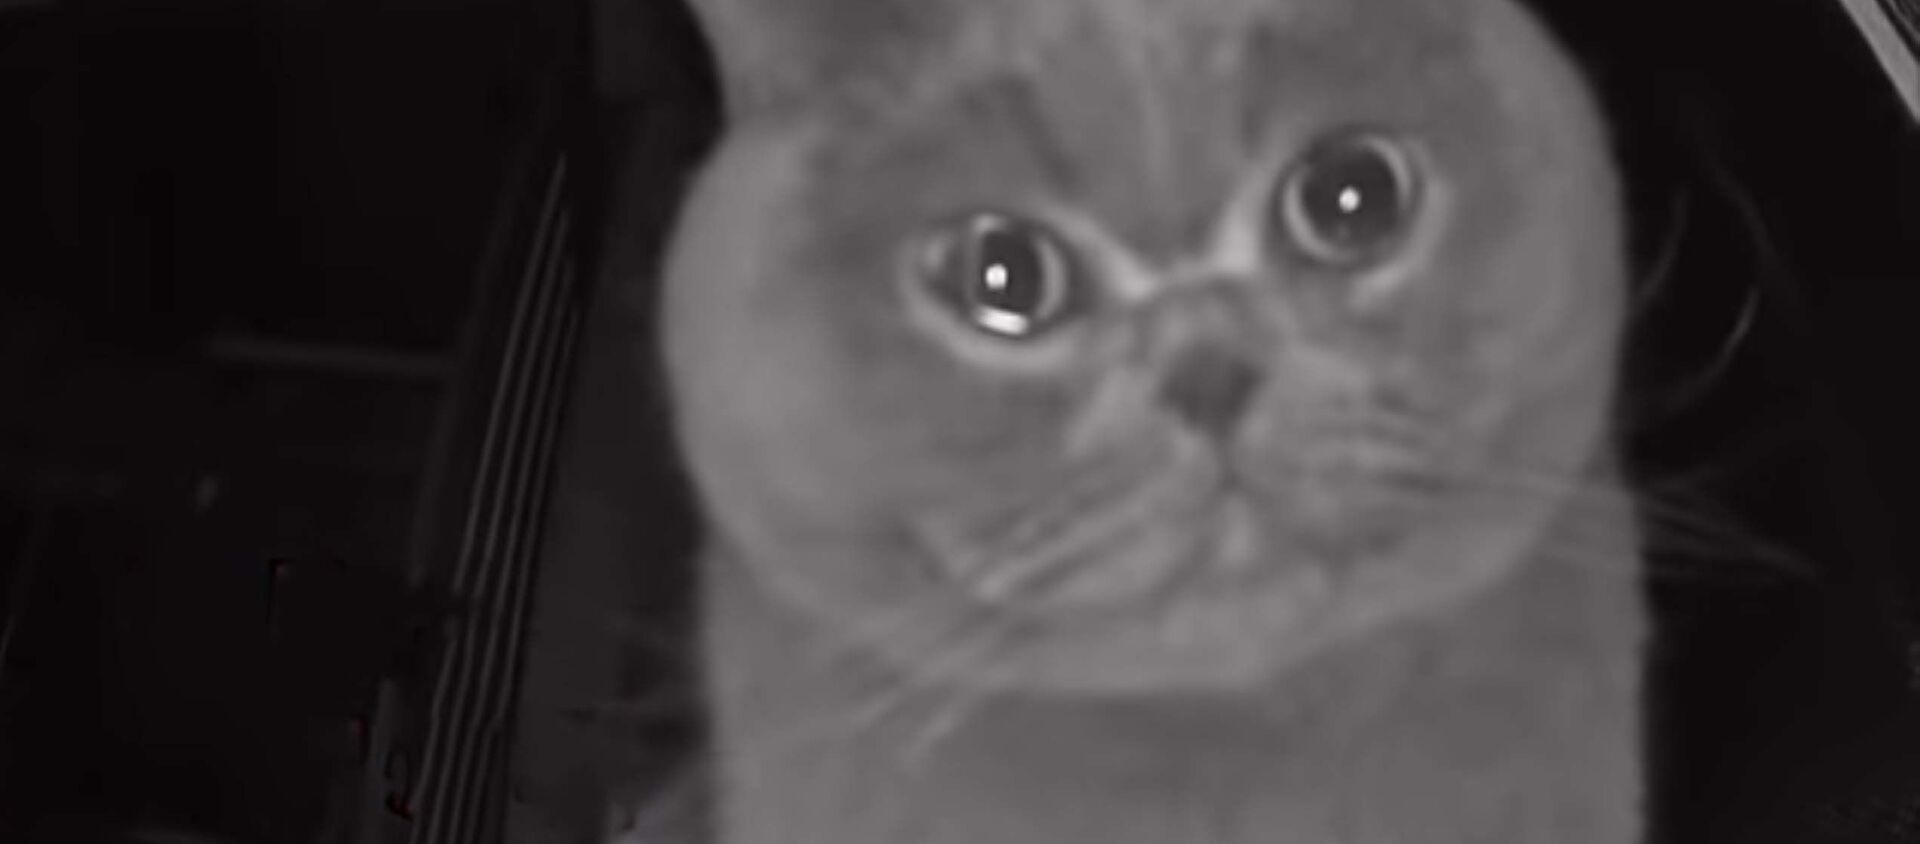 Домашний кот плачет'' на камеру видеонаблюдения - Sputnik Таджикистан, 1920, 19.02.2021